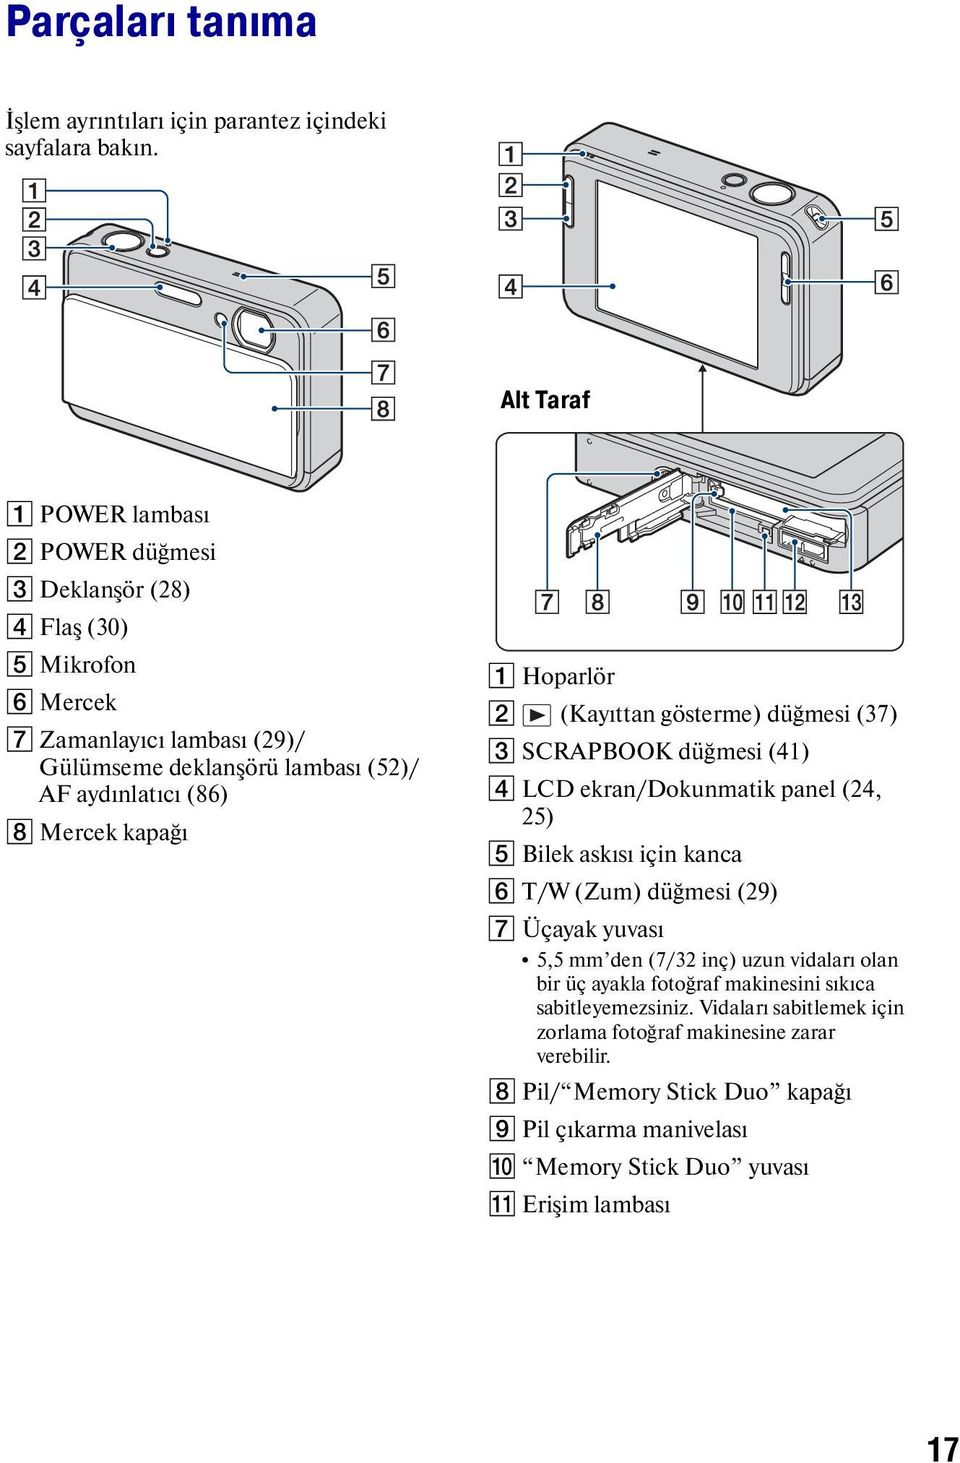 Mercek kapağı A Hoparlör B (Kayıttan gösterme) düğmesi (37) C SCRAPBOOK düğmesi (41) D LCD ekran/dokunmatik panel (24, 25) E Bilek askısı için kanca F T/W (Zum) düğmesi (29) G